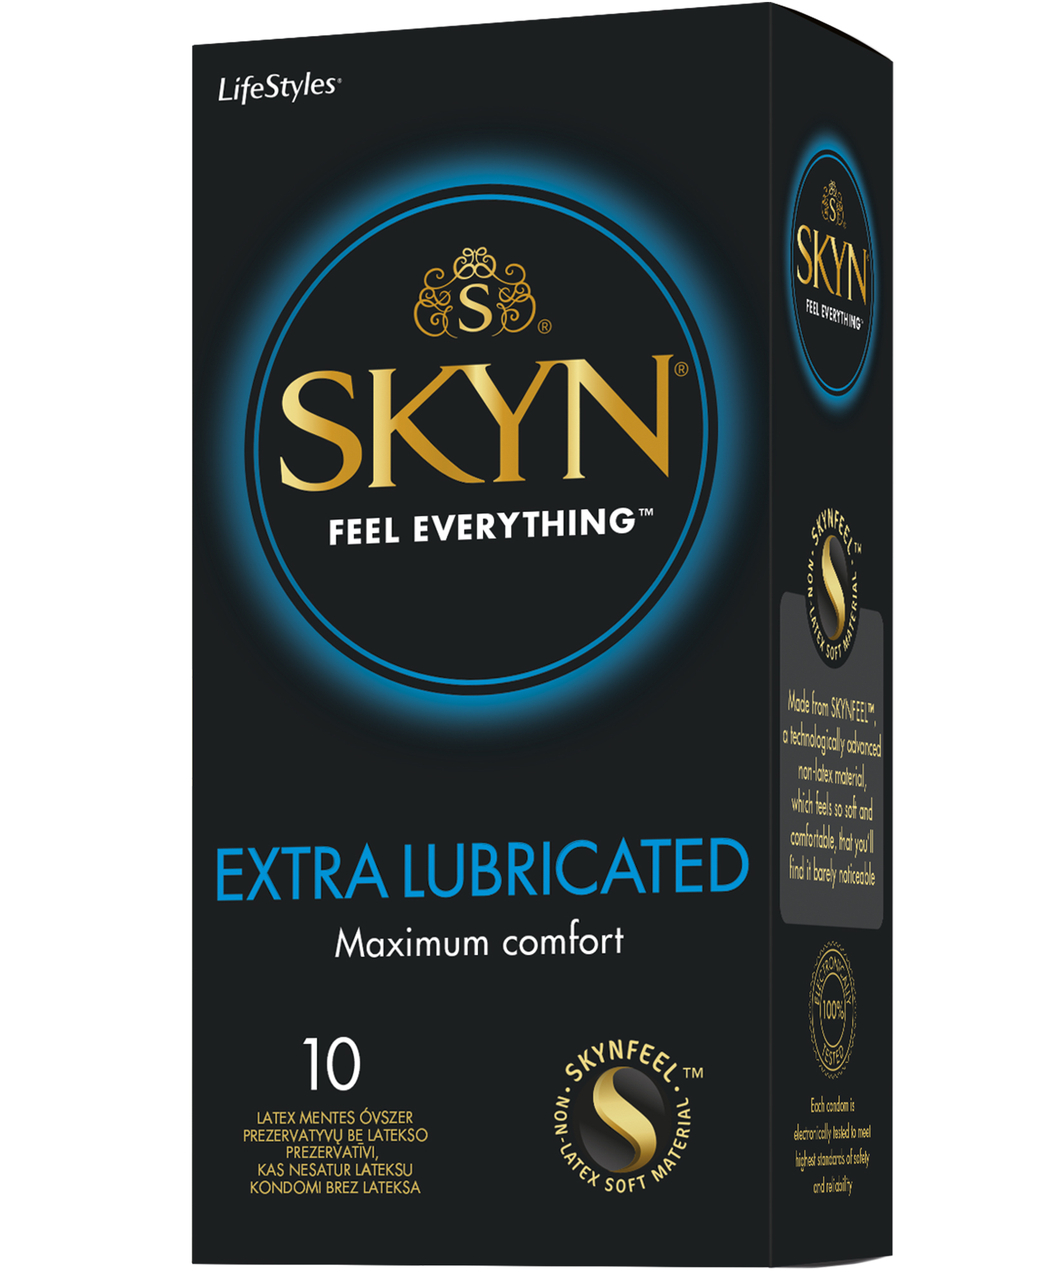 SKYN Extra Lubricated prezervatyvai (3 / 10 vnt.)